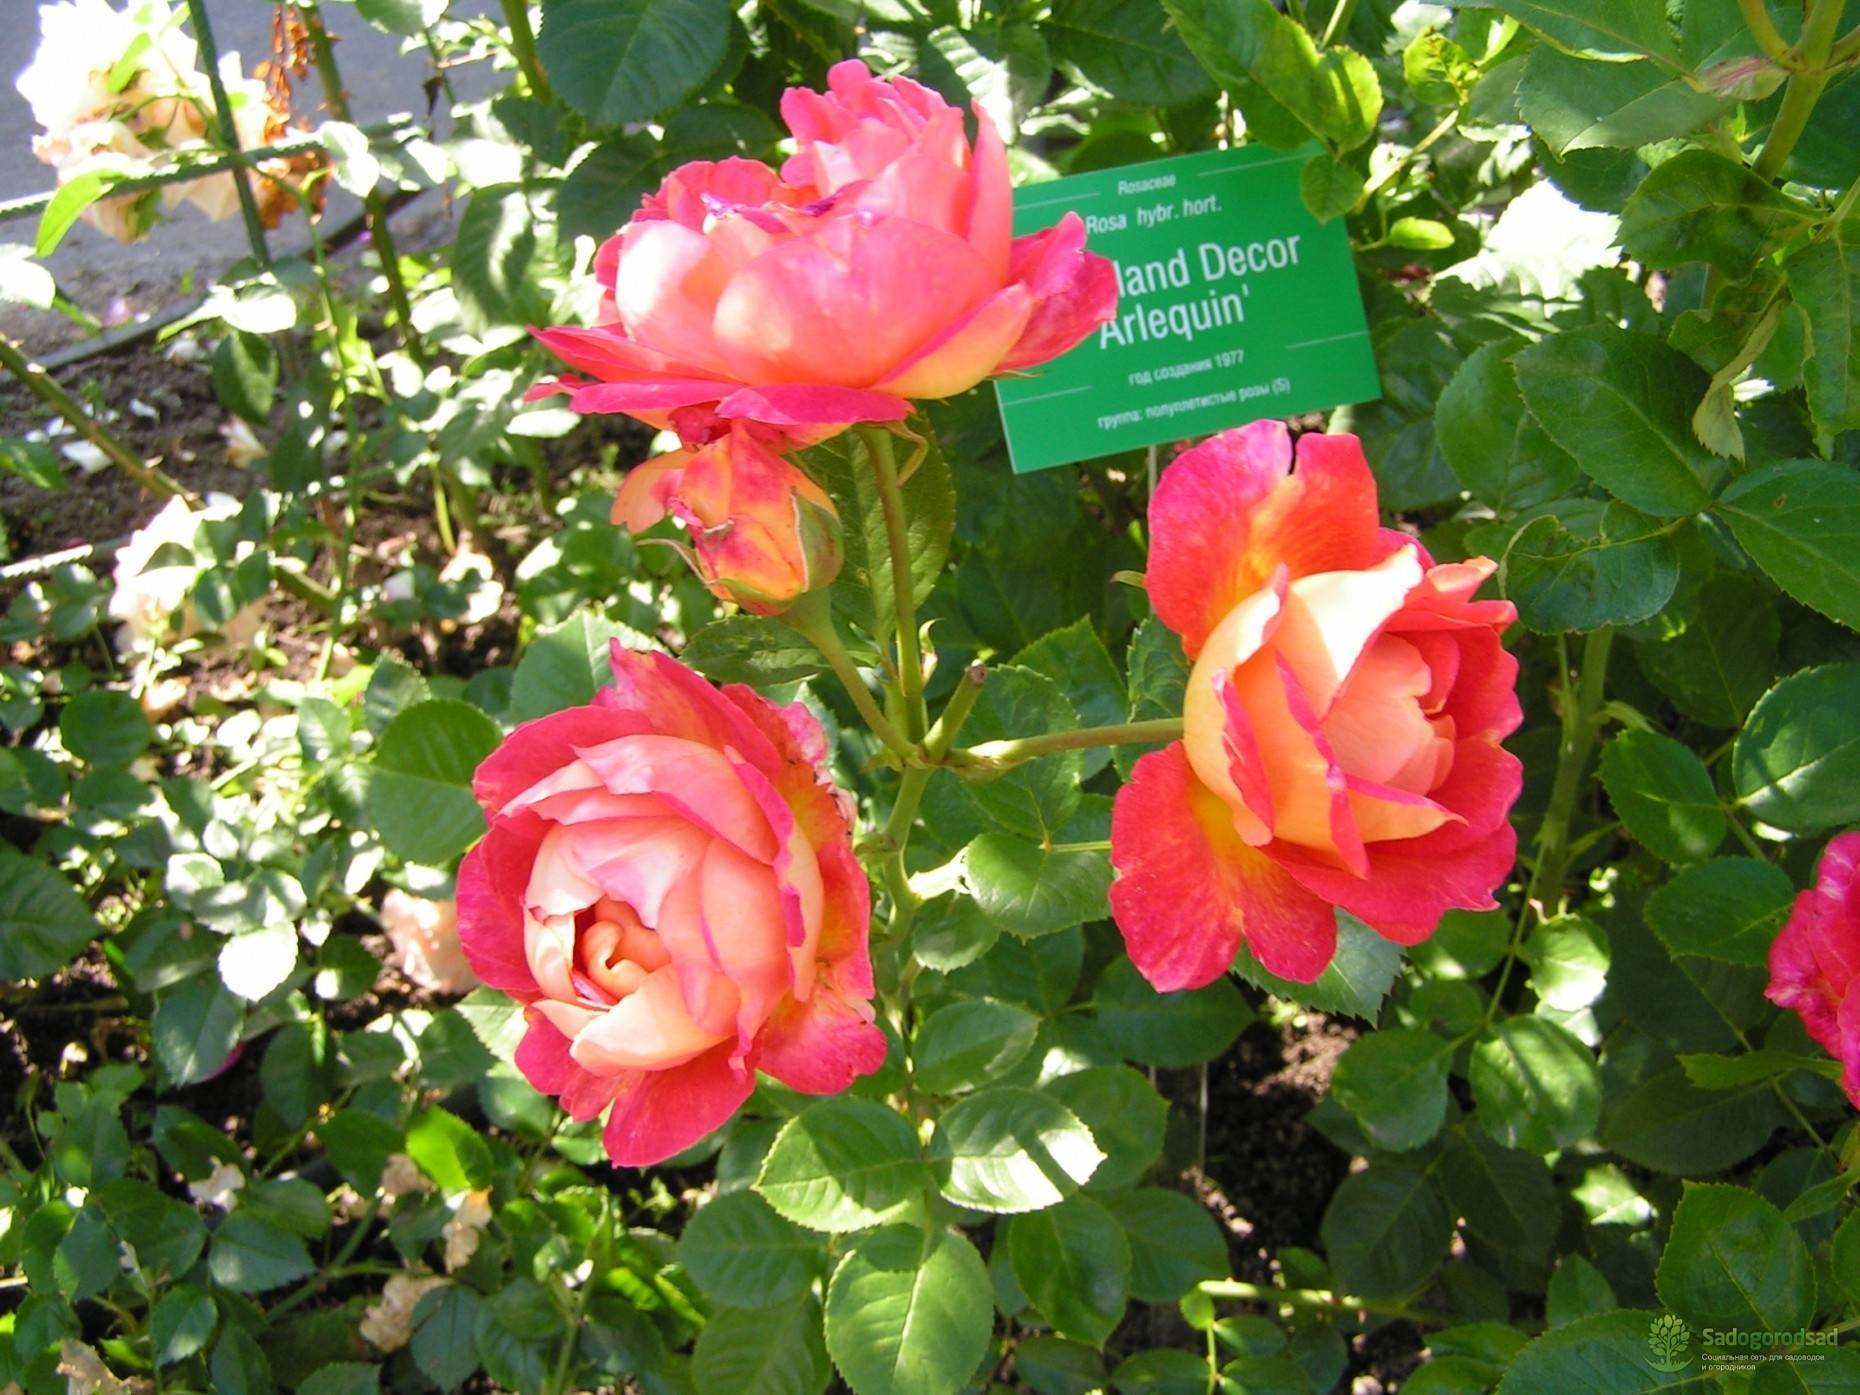 О розе арлекин (arlequin ): описание и характеристики сорта плетистой розы